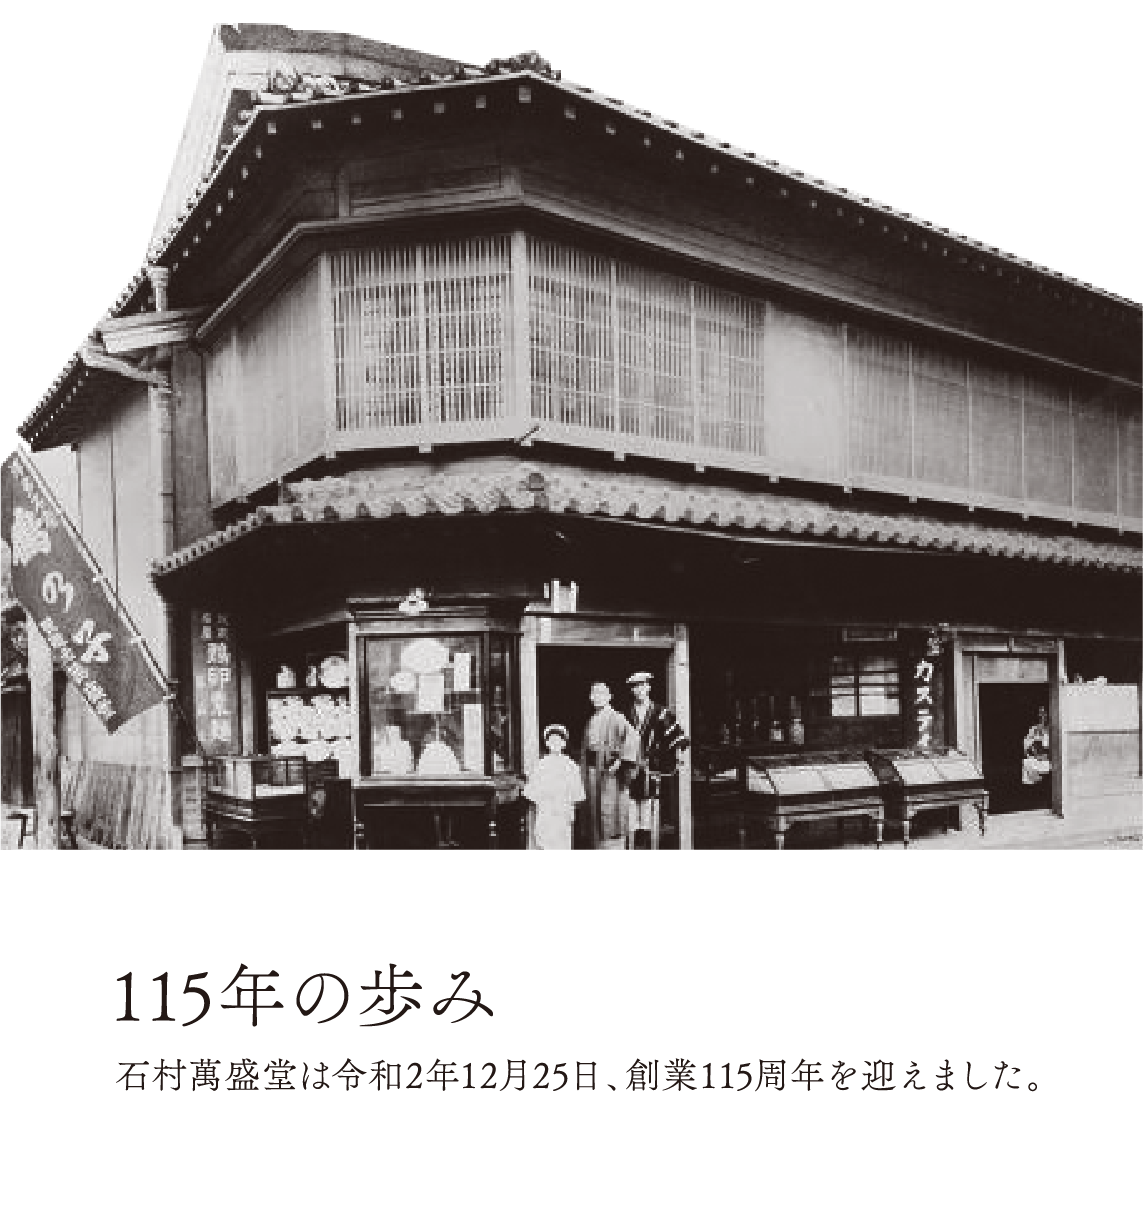 115年の歩み 石村萬盛堂は令和2年12月25日、創業115周年を迎えました。